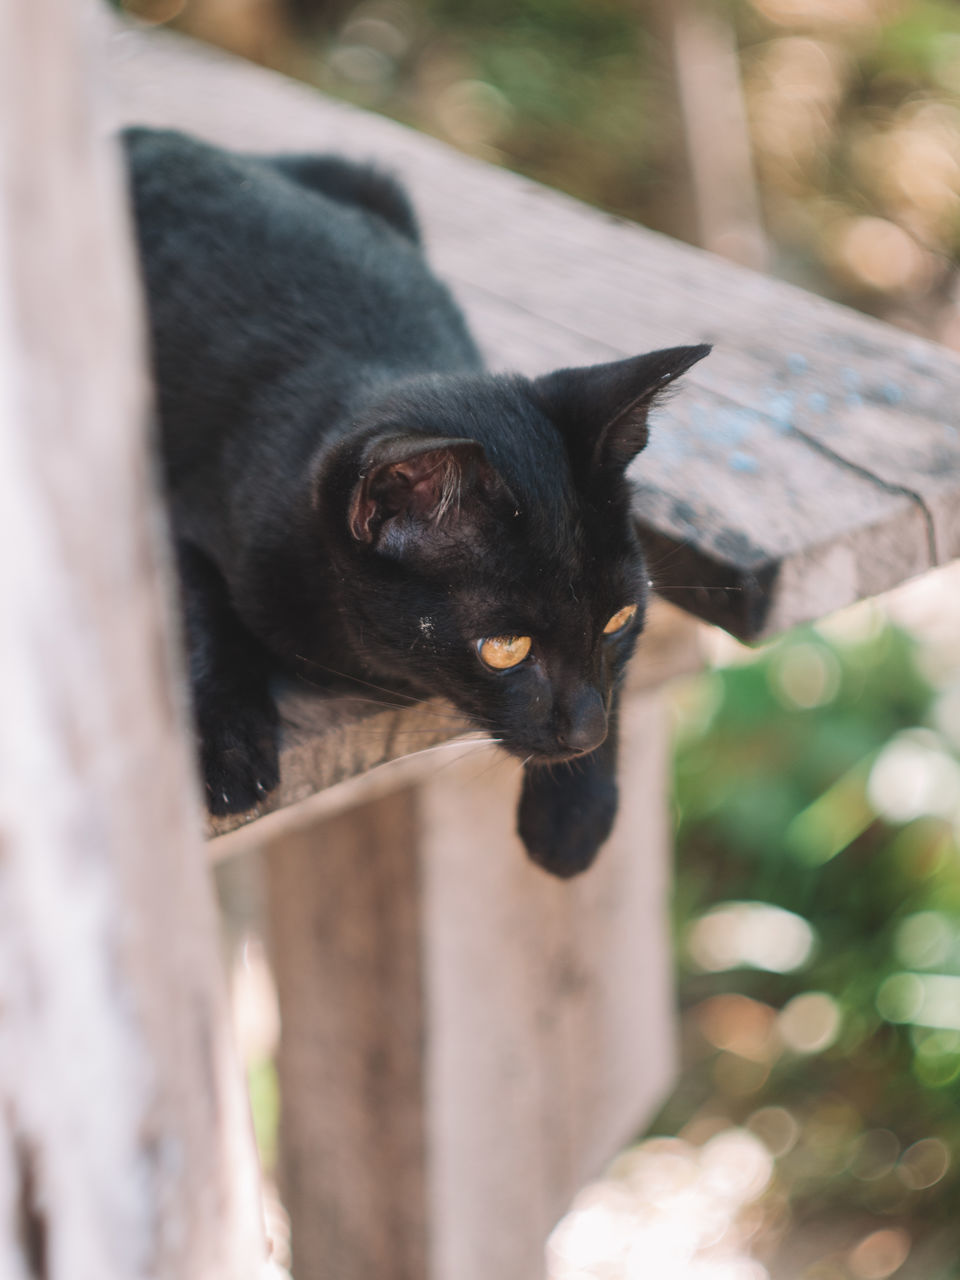 CLOSE-UP PORTRAIT OF A BLACK CAT